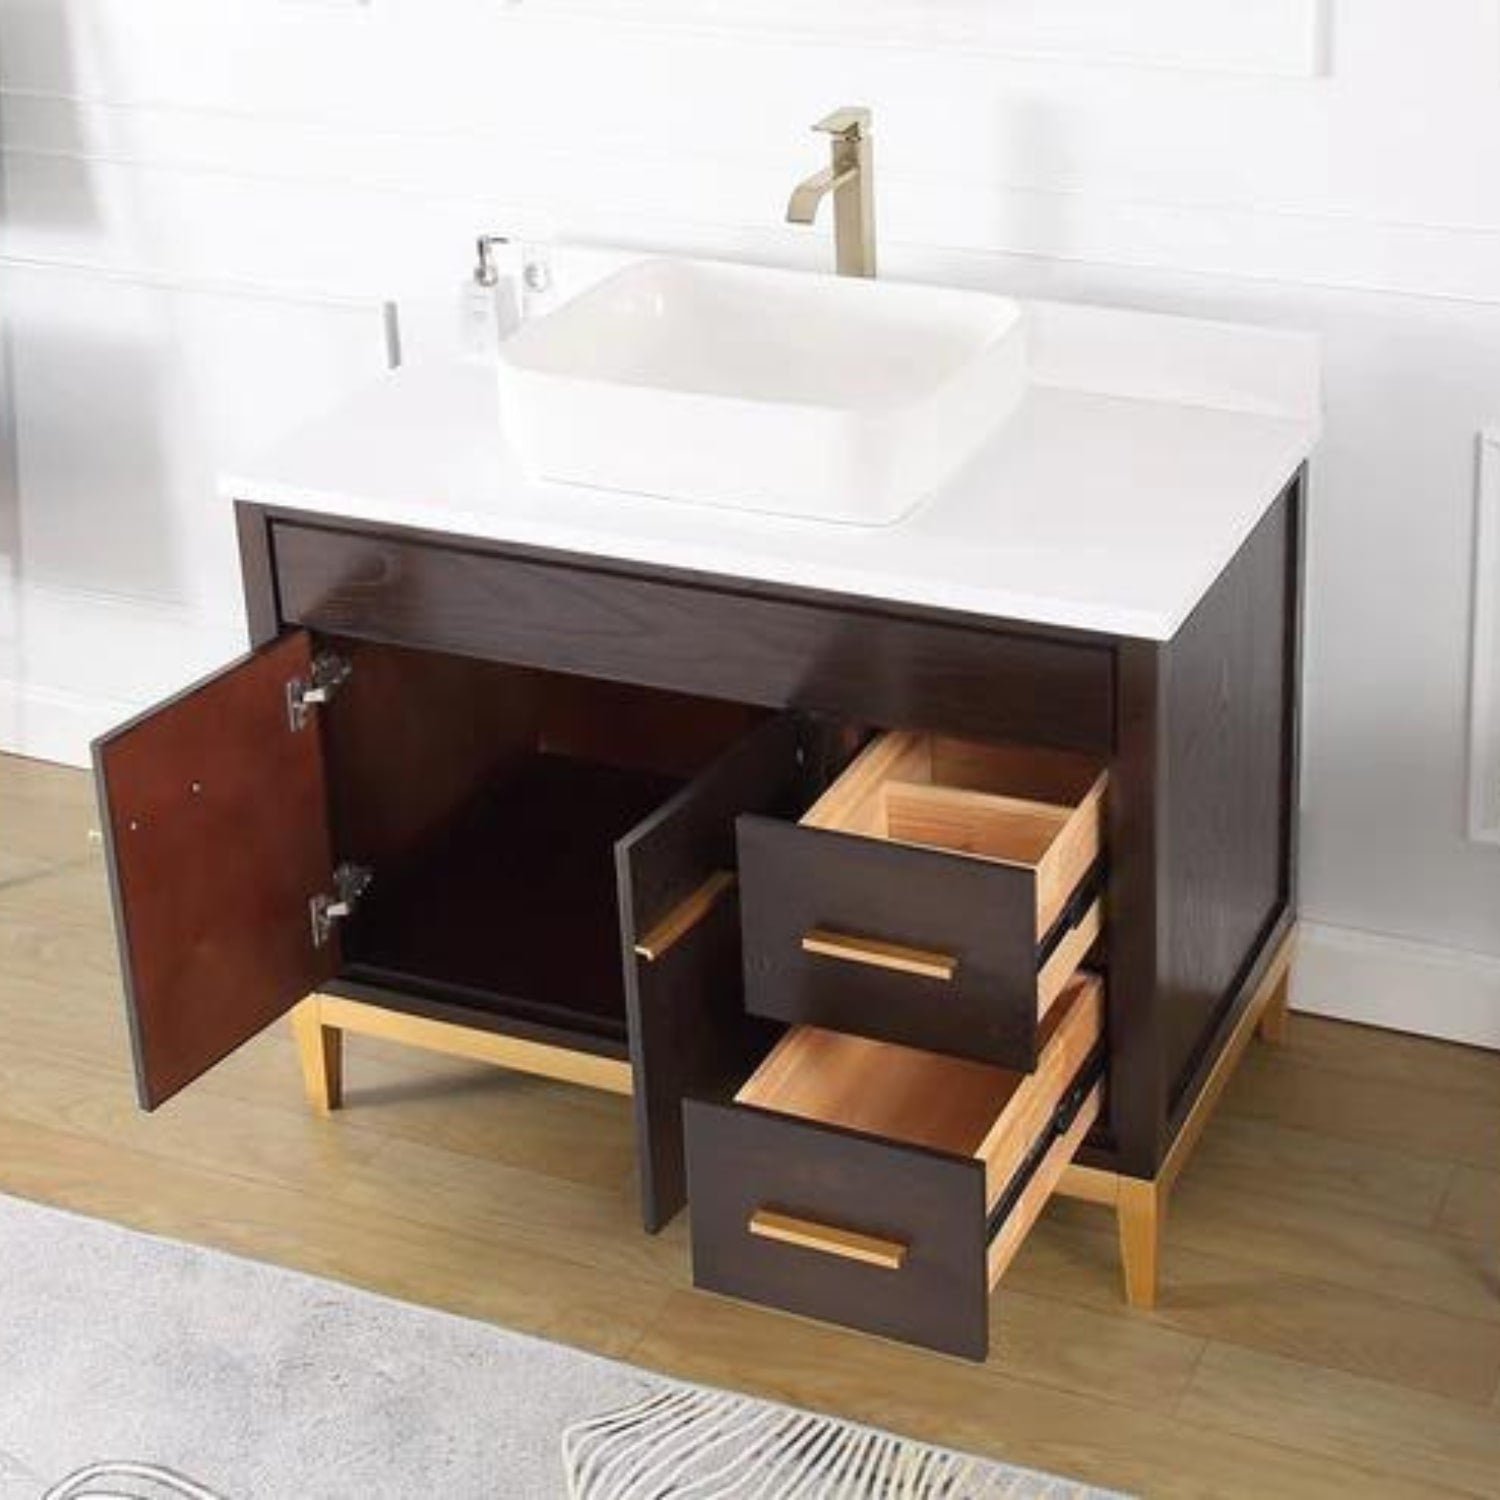 Beatrice 42" Espresso Bathroom Vanity with Vessel Sink - Contemporary Bathroom Vanity